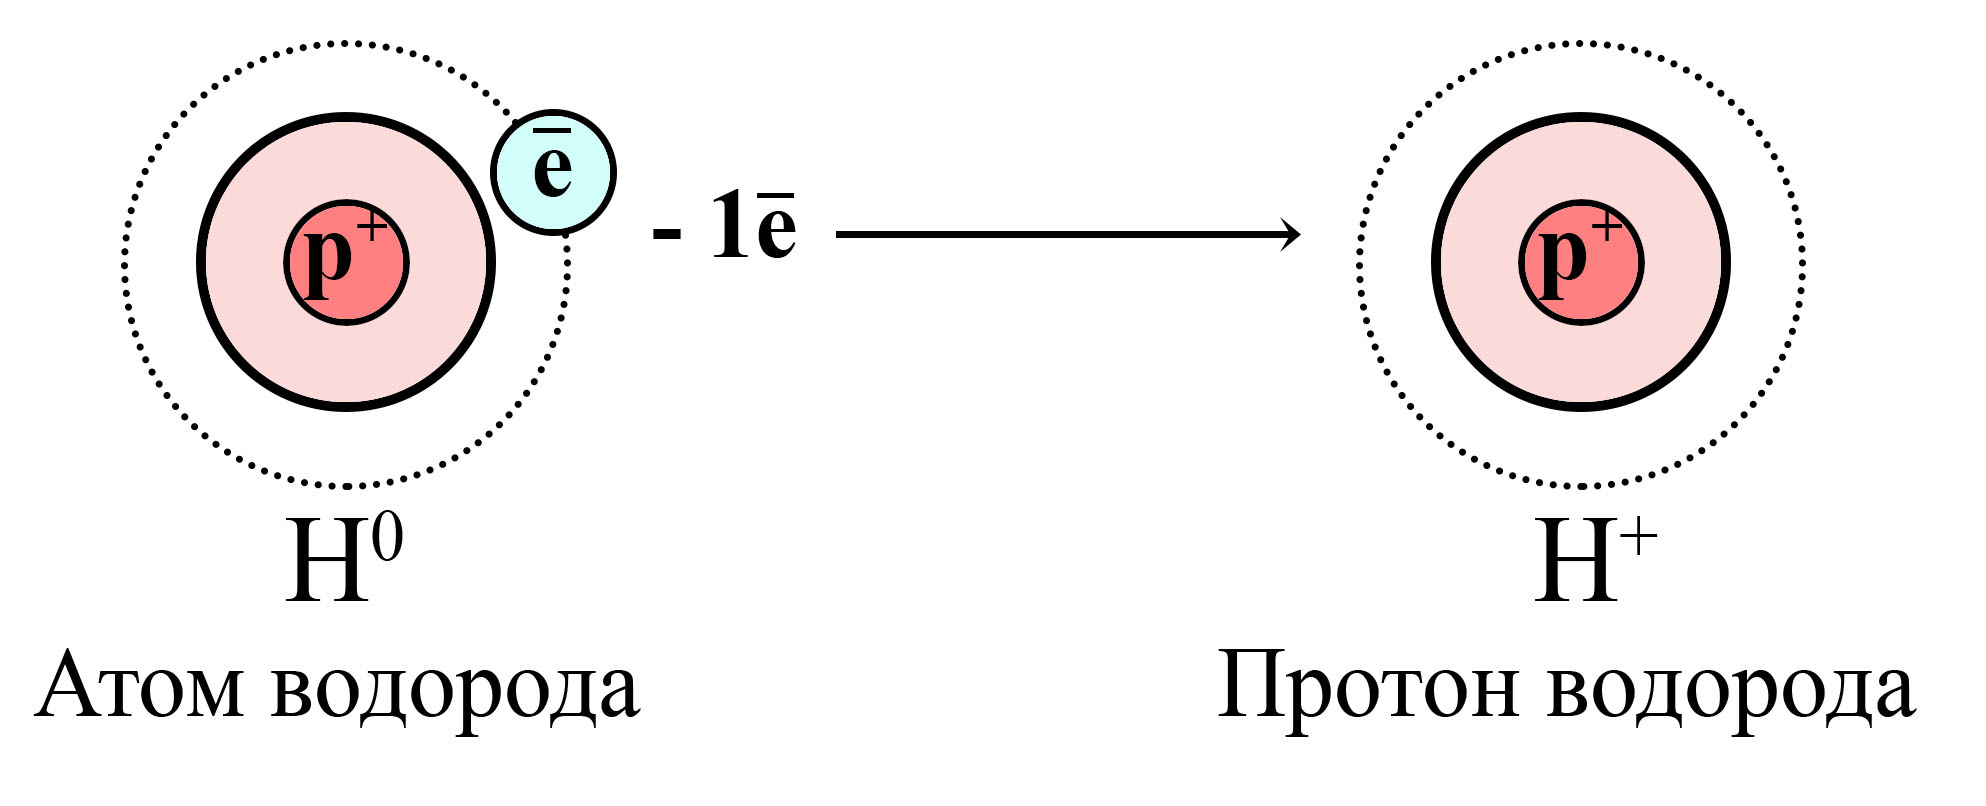 Образование протона водорода